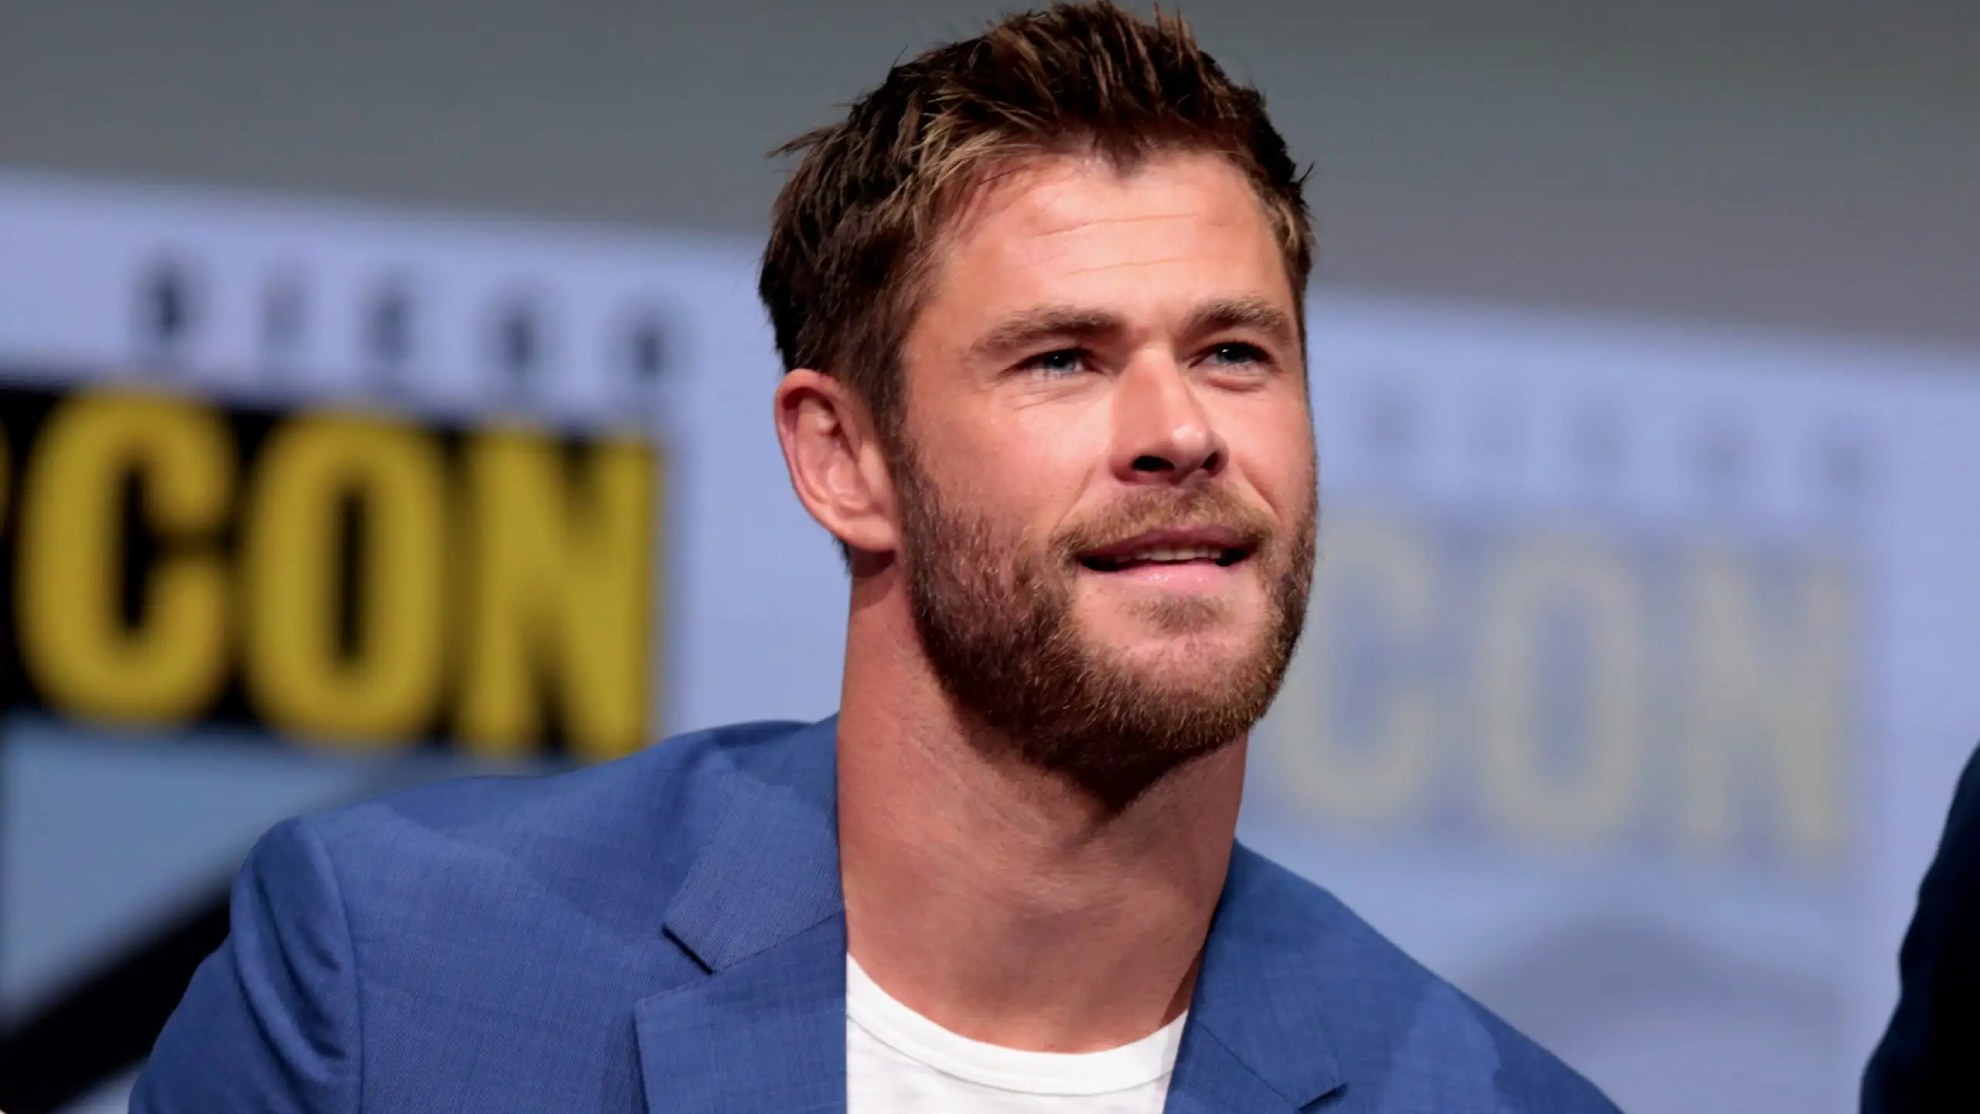 El actor Chris Hemsworth hace una pausa en su carrera al descubrir que  tiene riesgo elevado de desarrollar Alzheimer - BBC News Mundo